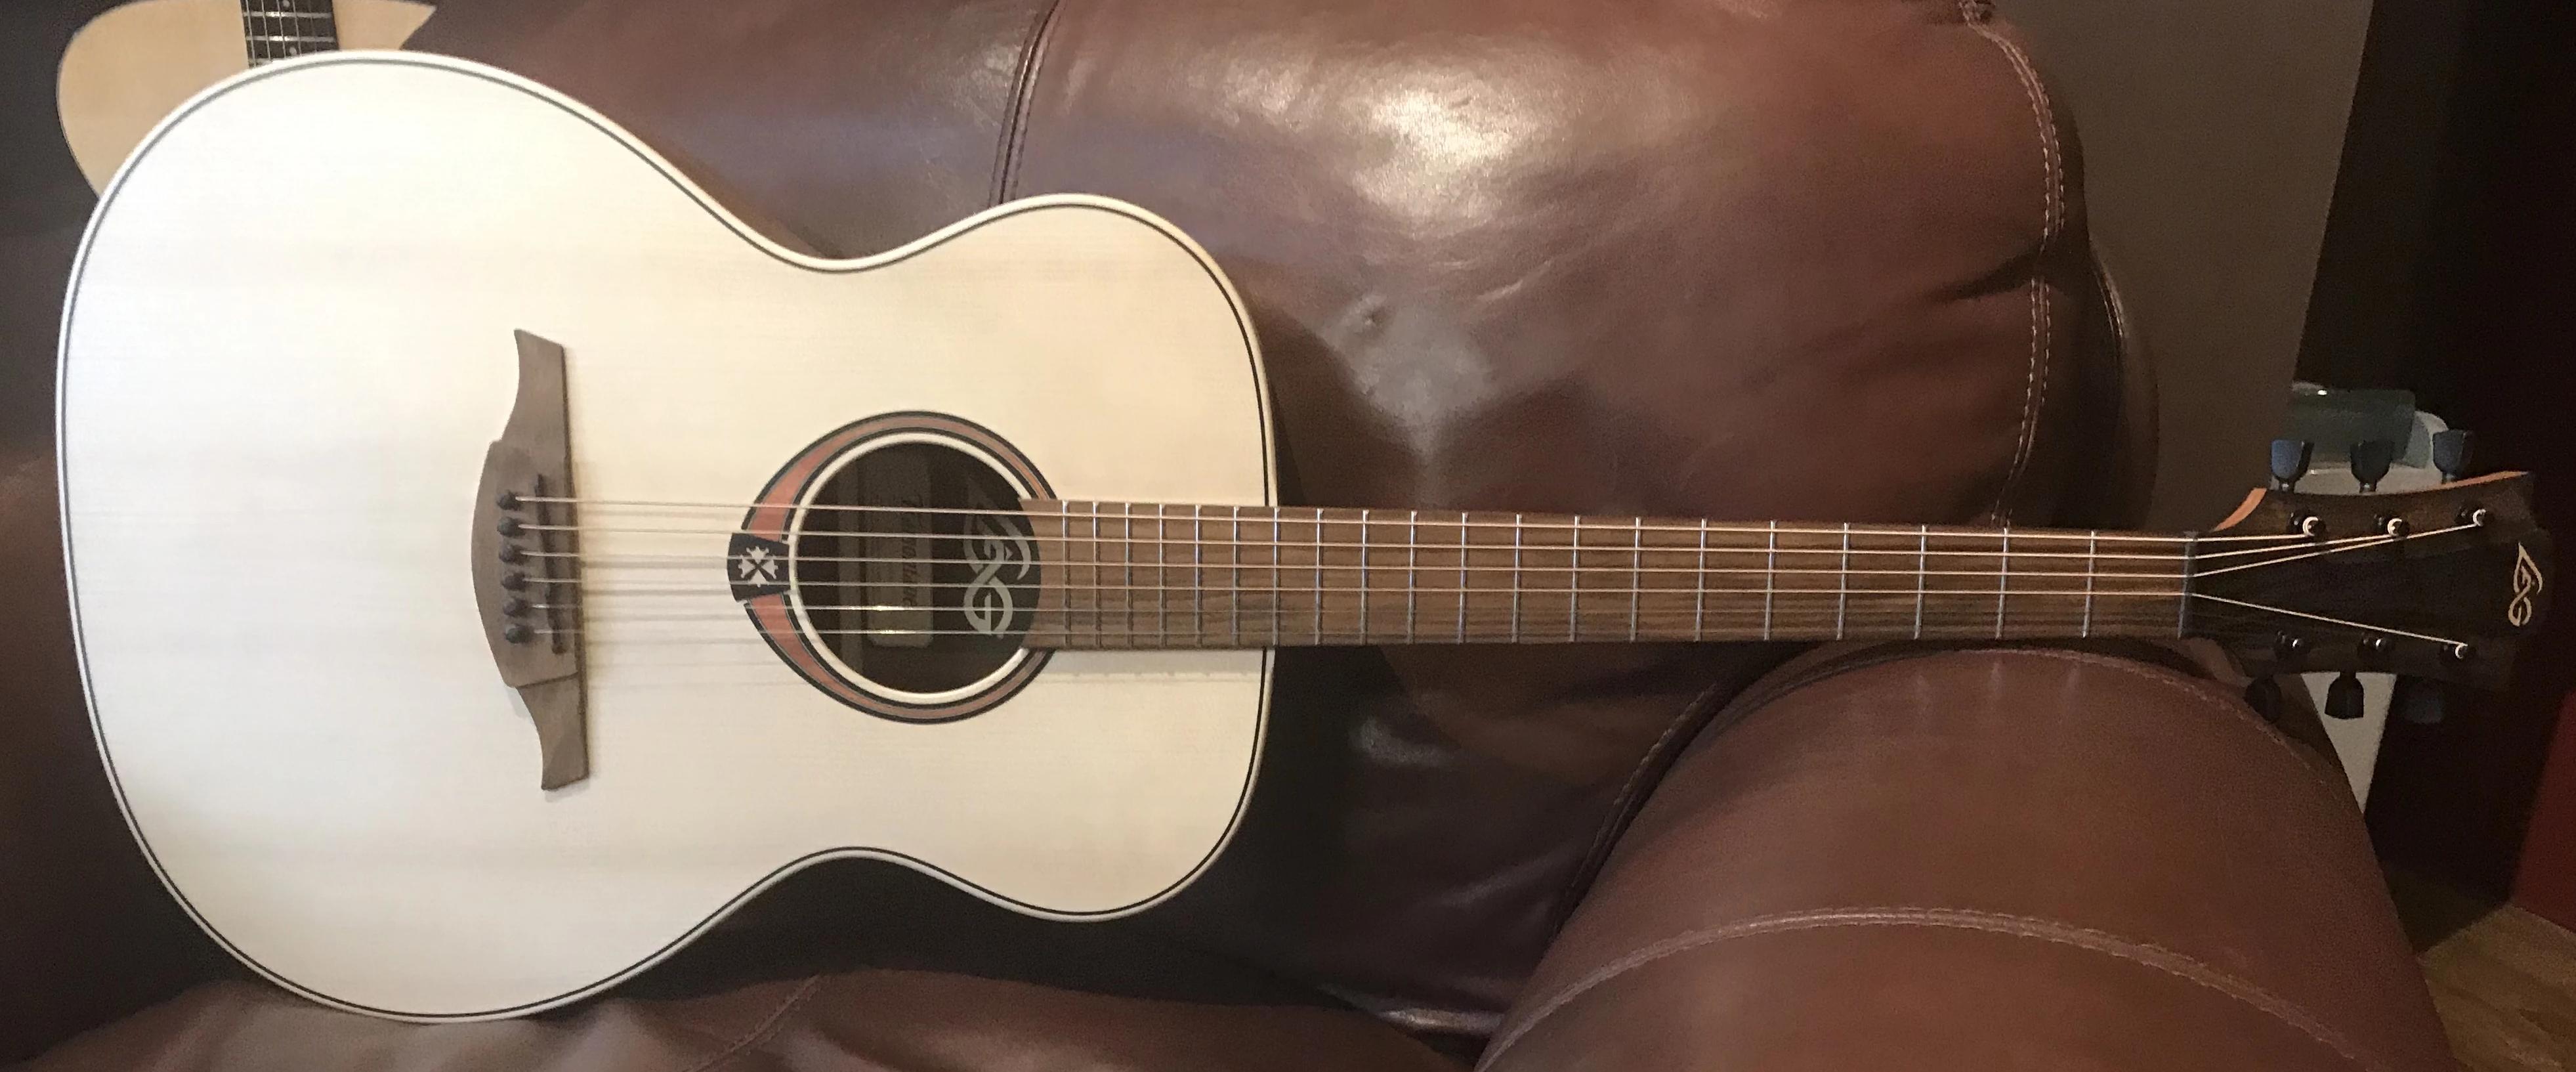 LAG T70A Satin Finish Auditorium Acoustic Guitar, Acoustic Guitar for sale at Richards Guitars.